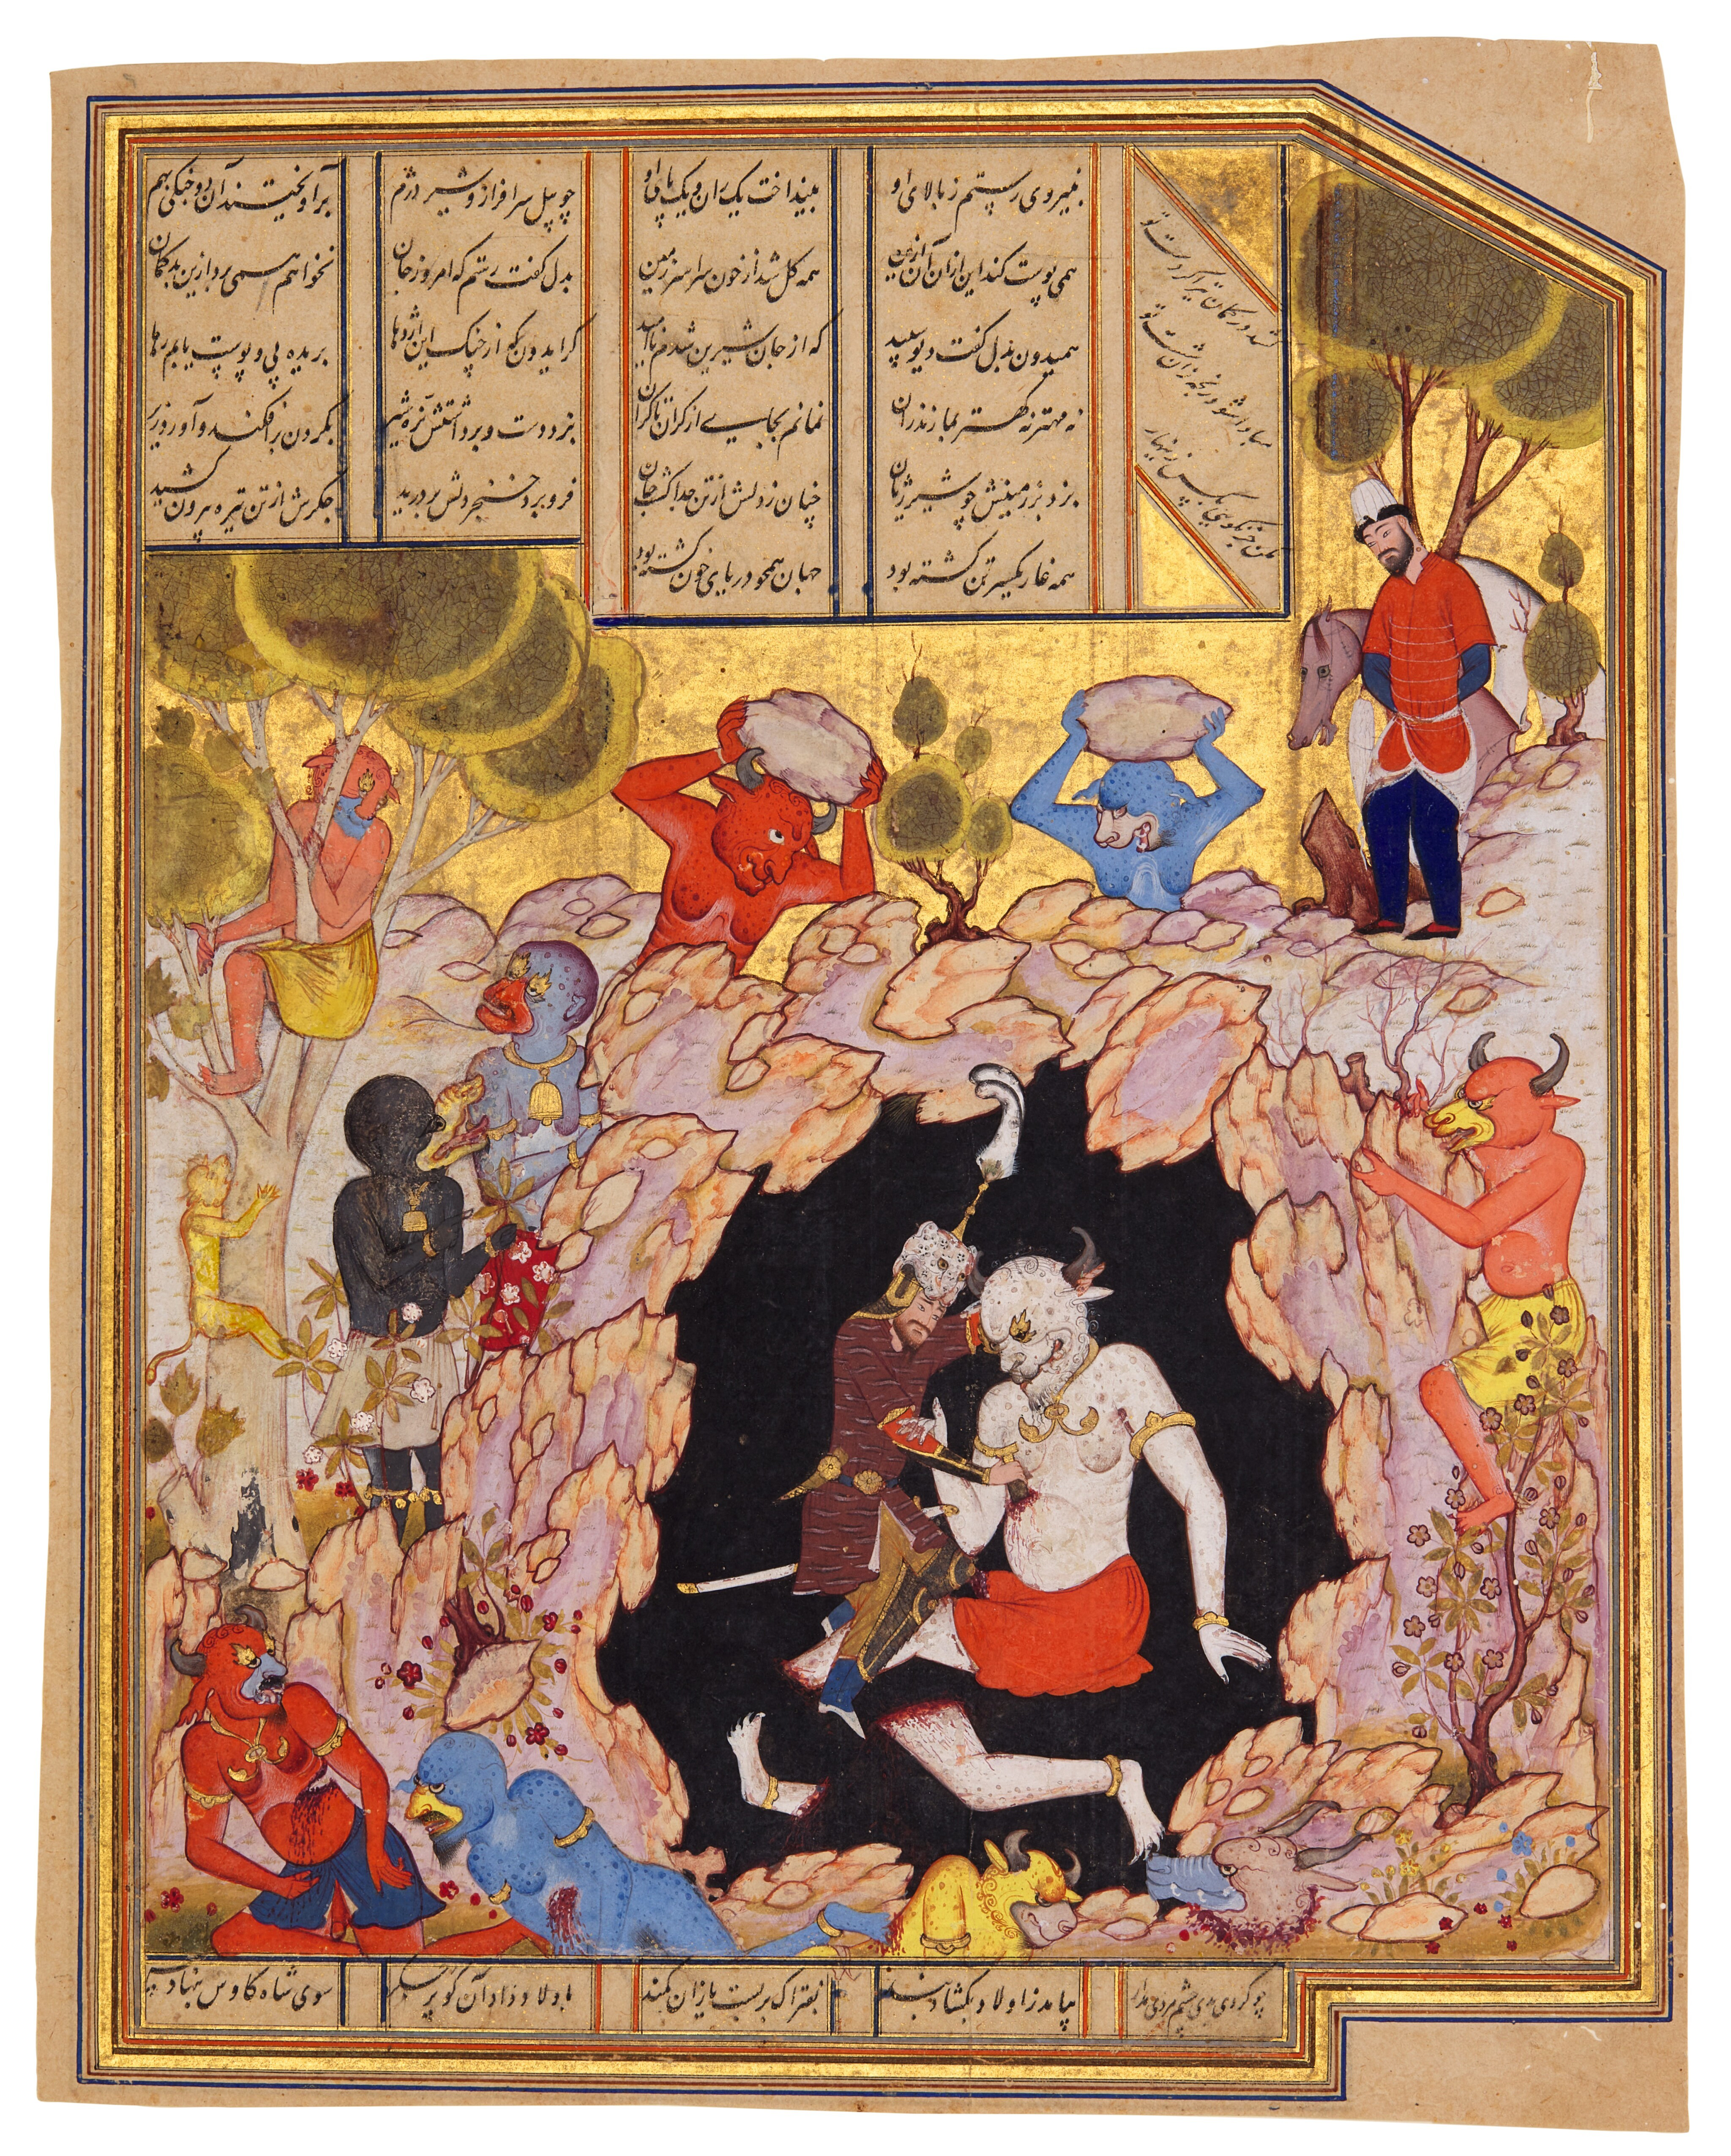 Firdevsî'nin Şehname'sinin bir el yazmasından Rüstem'in devi öldürdüğü resimli bir varak, 1560-80 civarı (824 bin liraya satıldı)